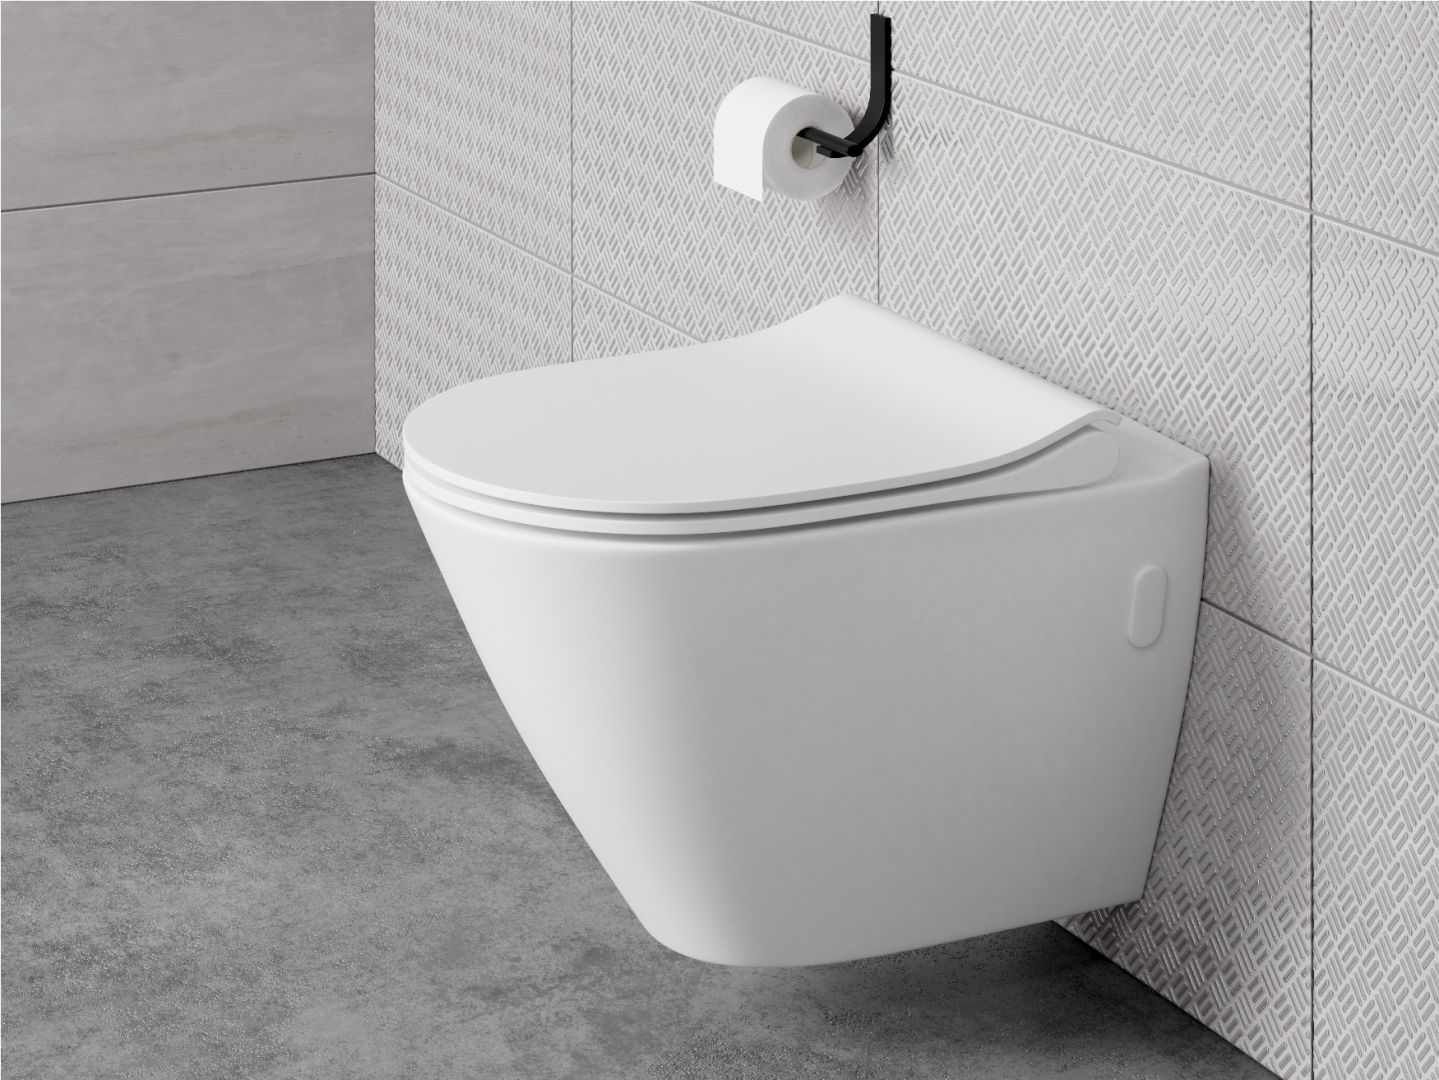 Miski bezkołnierzowe to przyszłość toalety. Usunięcie wewnętrznego rantu oraz zastosowanie innowacyjnego systemu spłukiwania w miskach CleanOn zapewnia higieniczną łazienkę.  Fot. Cersanit